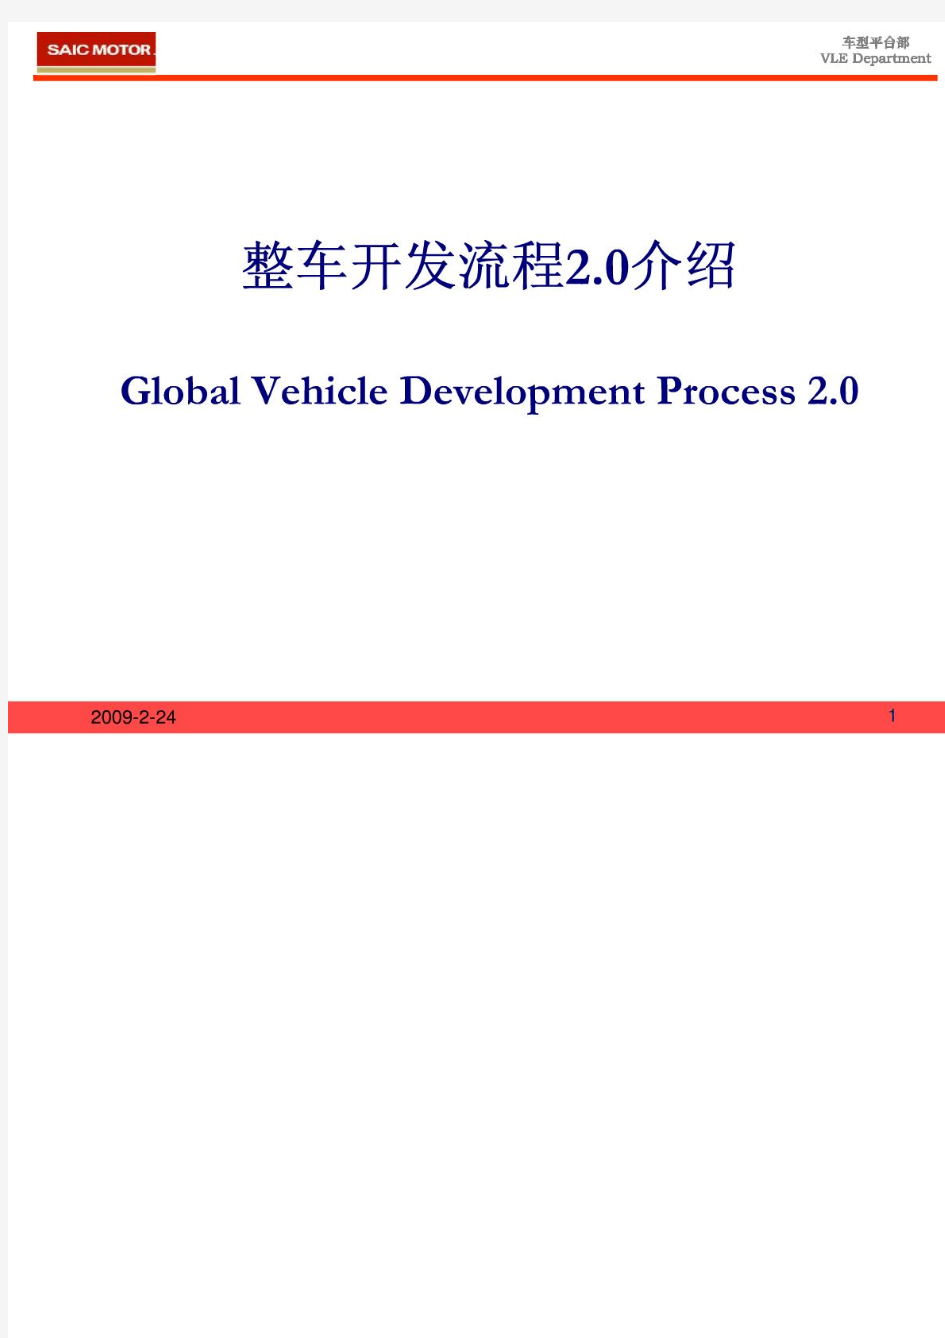 GVDP-整车开发流程2.0介绍